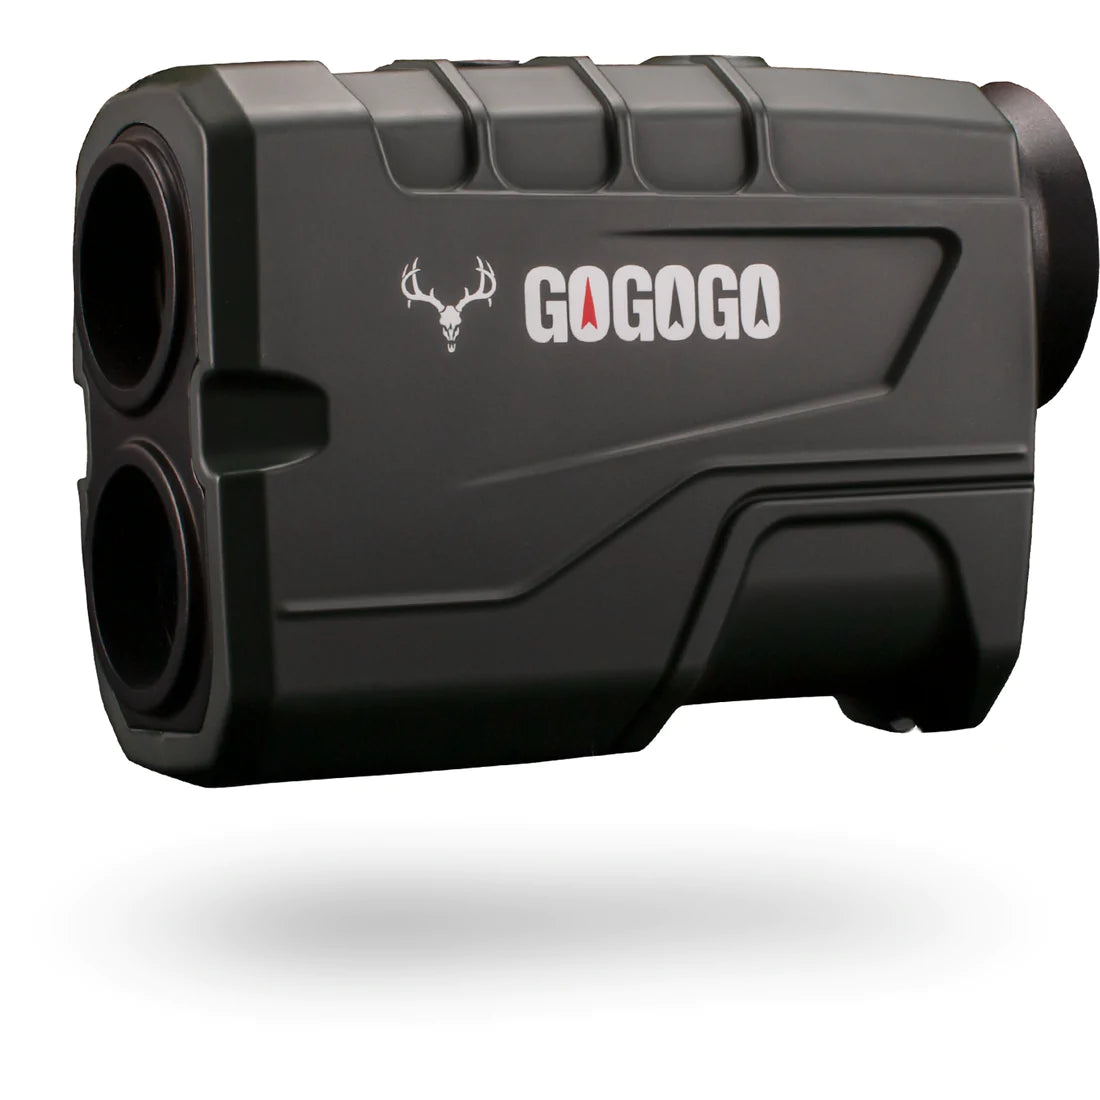 Gogogo Sport Gs19 rangefinder review. 